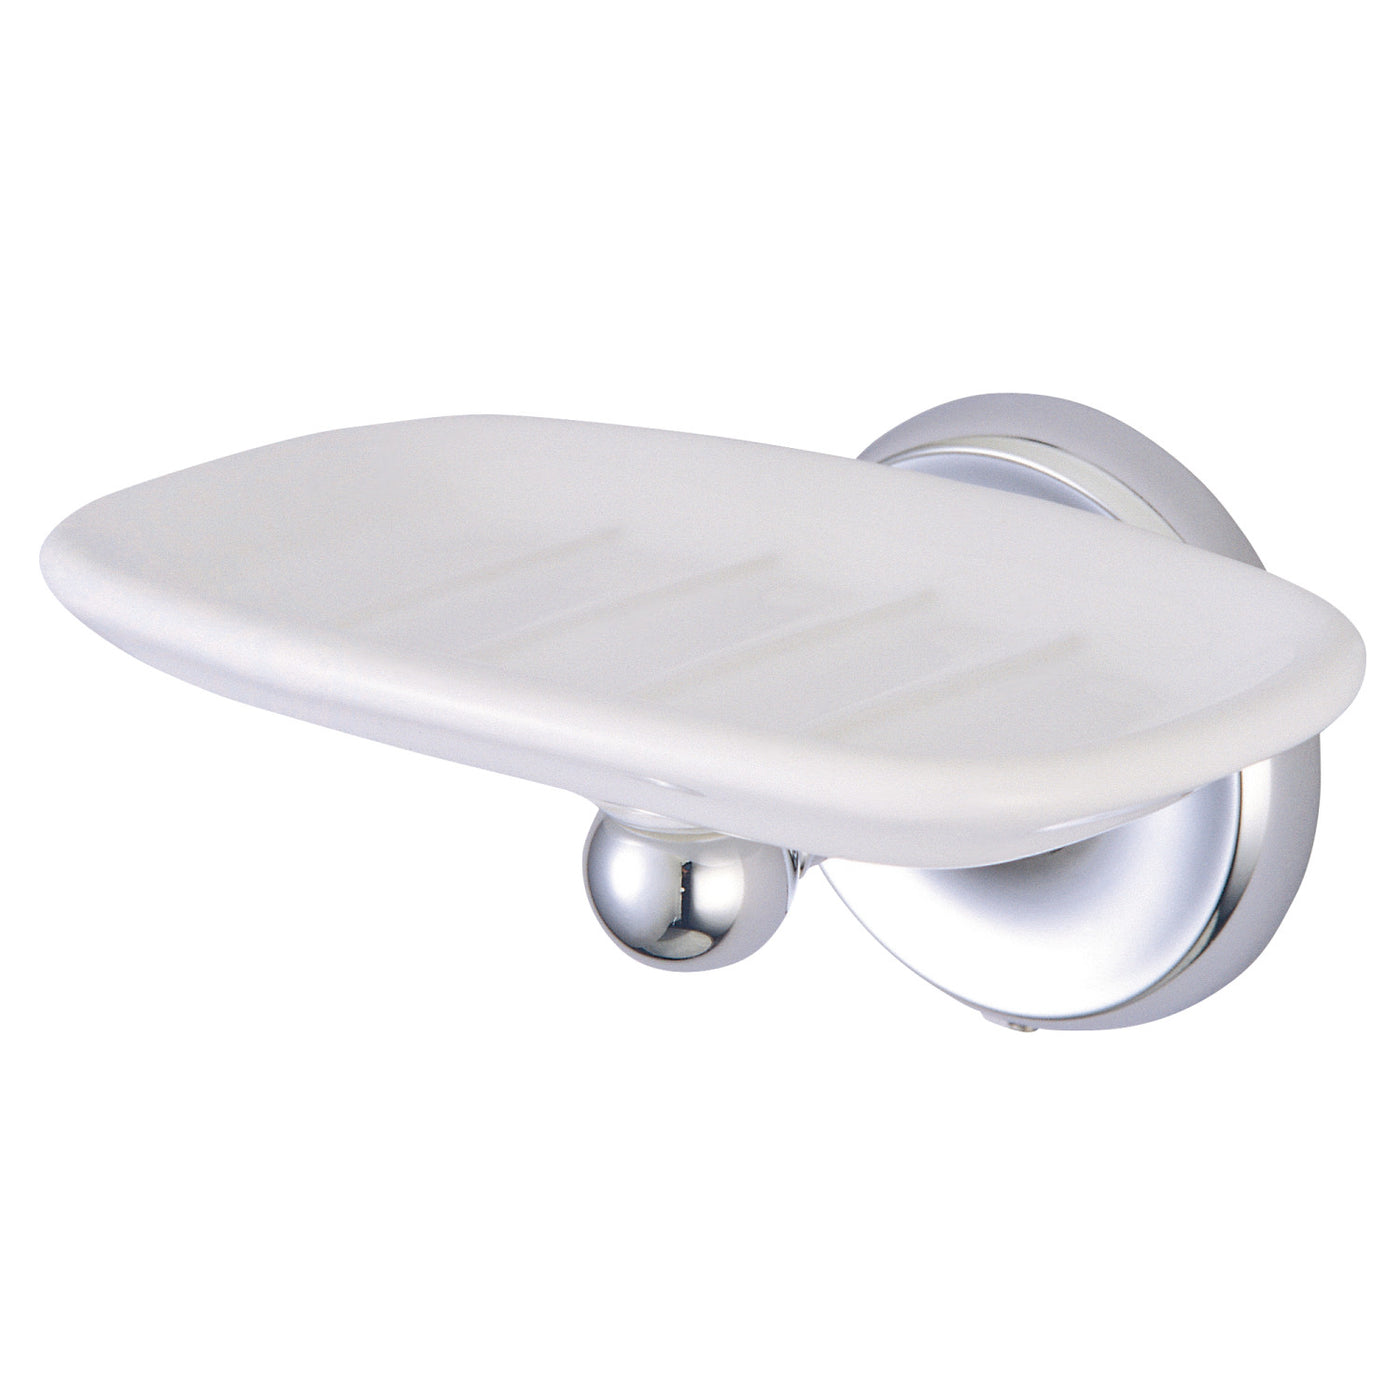 Elements of Design EBA315C Wall-Mount Soap Dish Holder, Polished Chrome